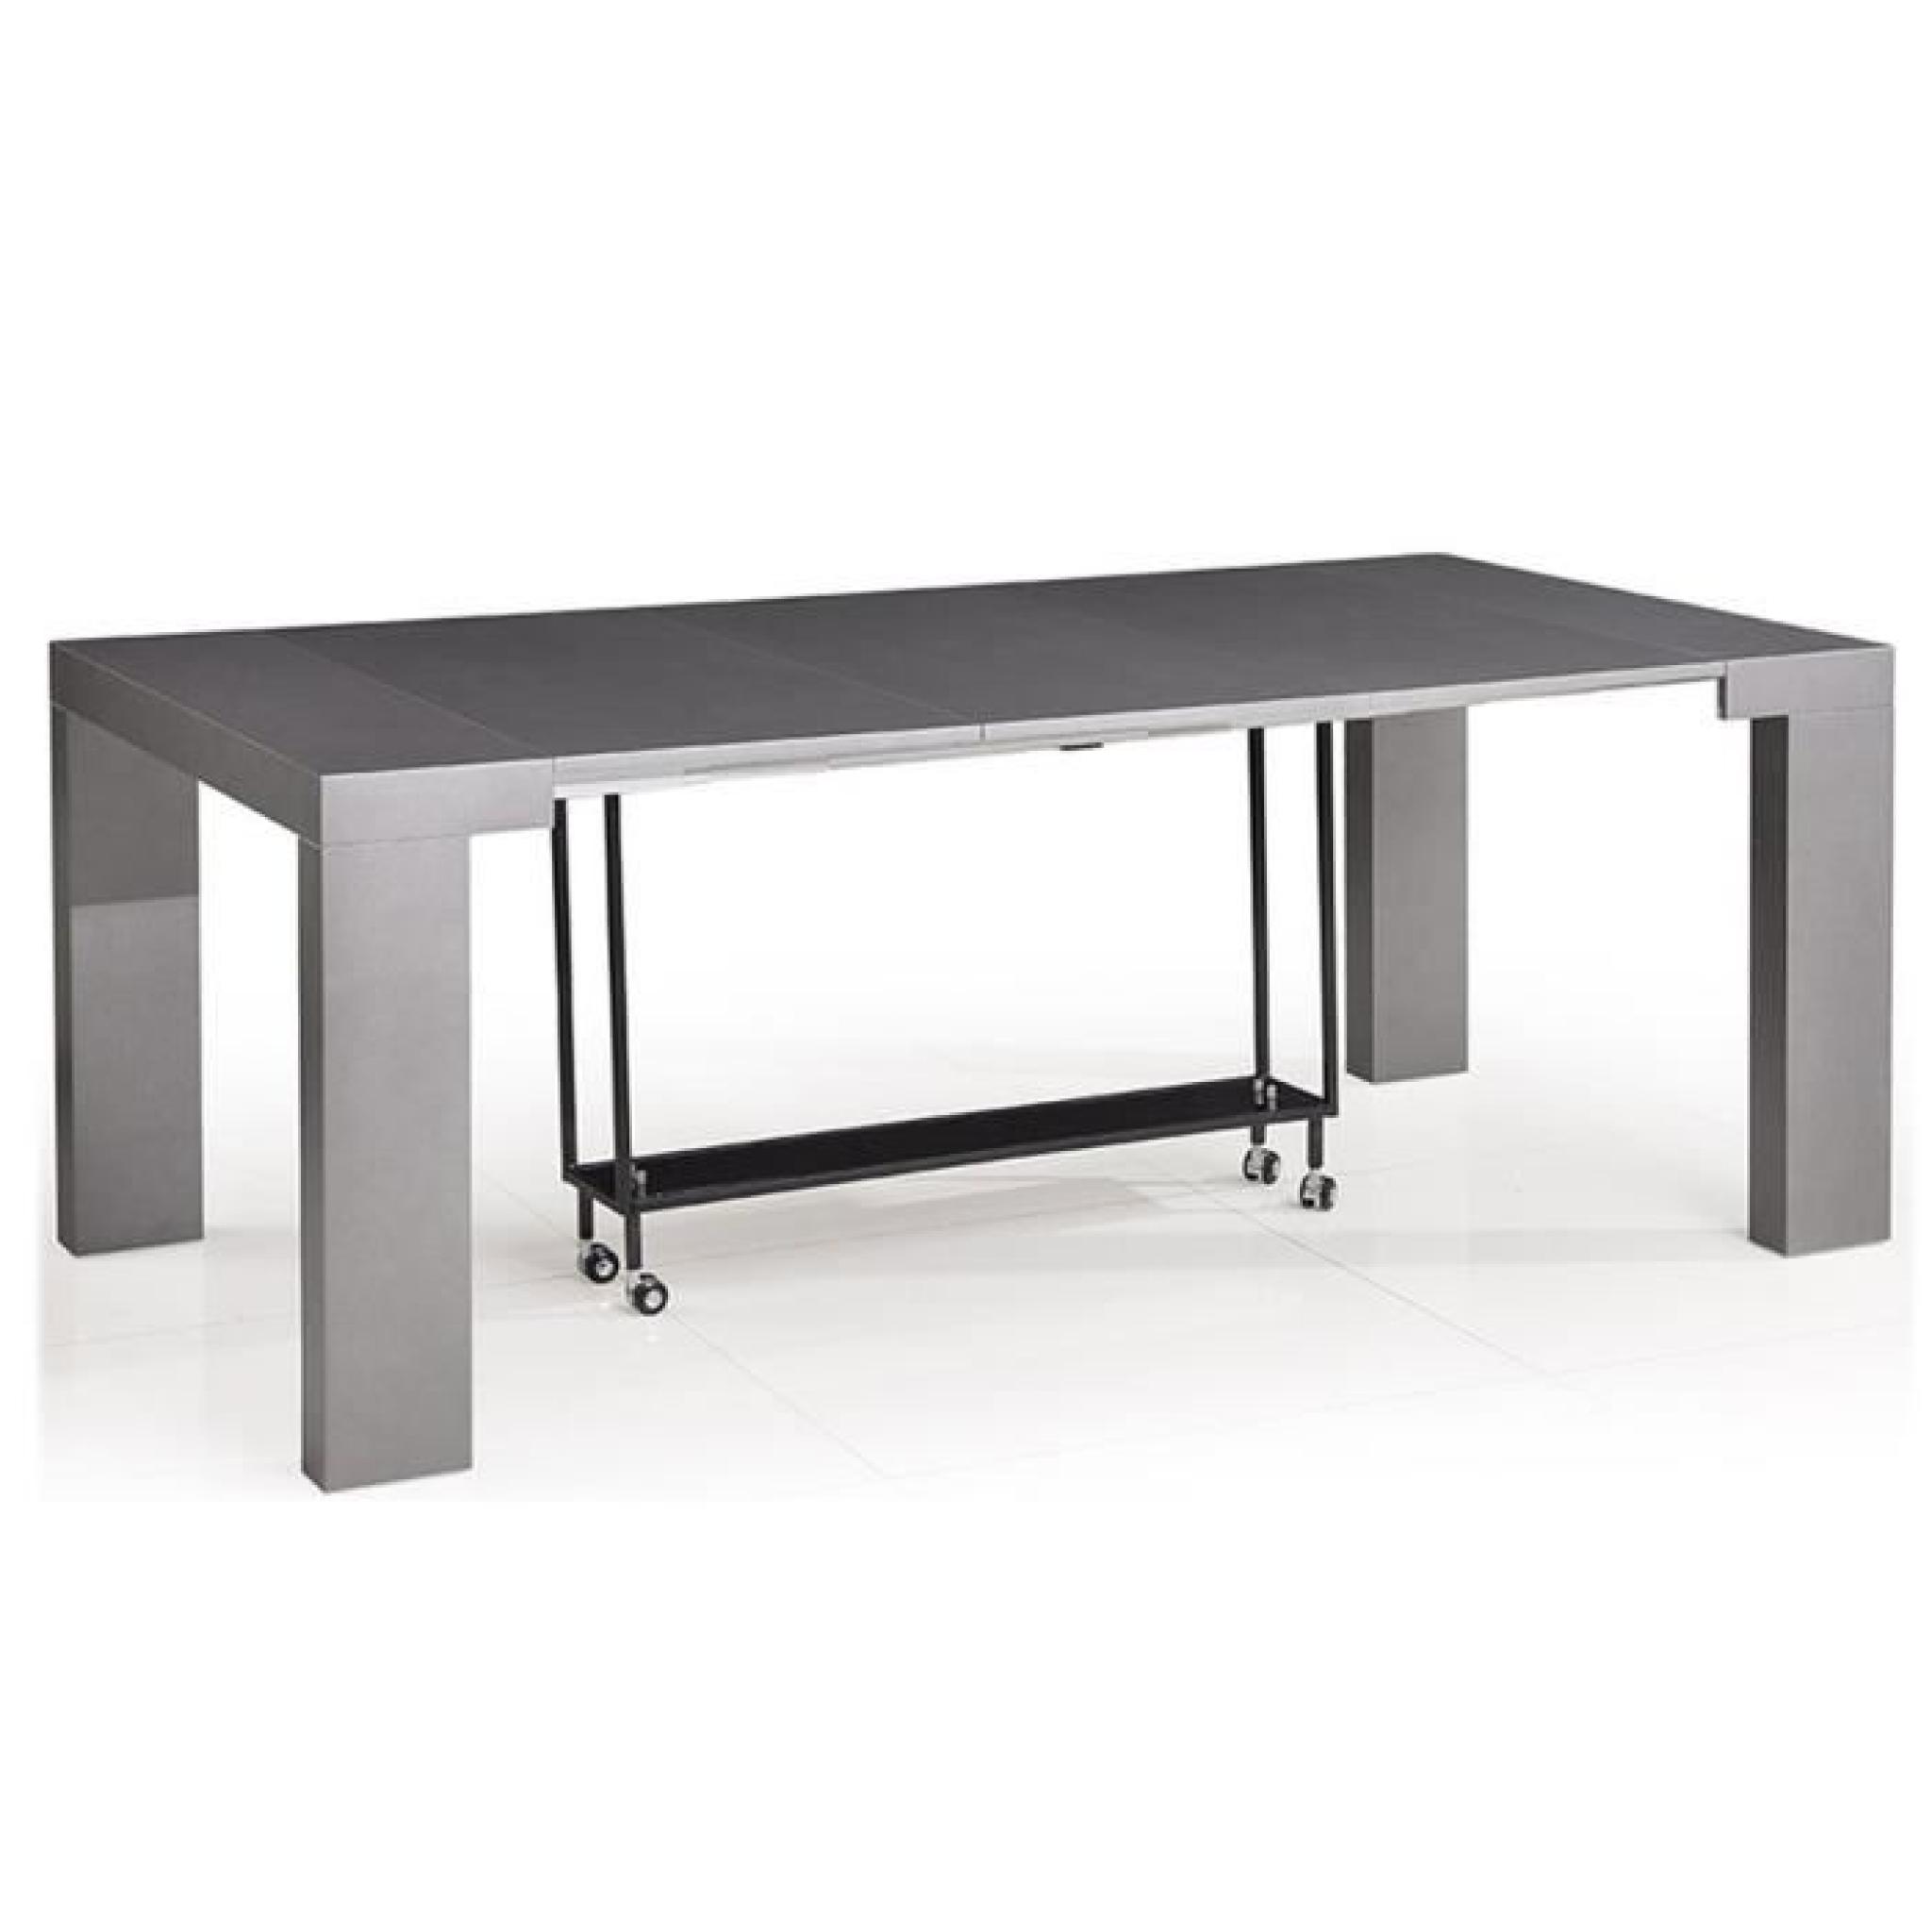 Table console grise / Bois MDF laqué Lamancha pas cher